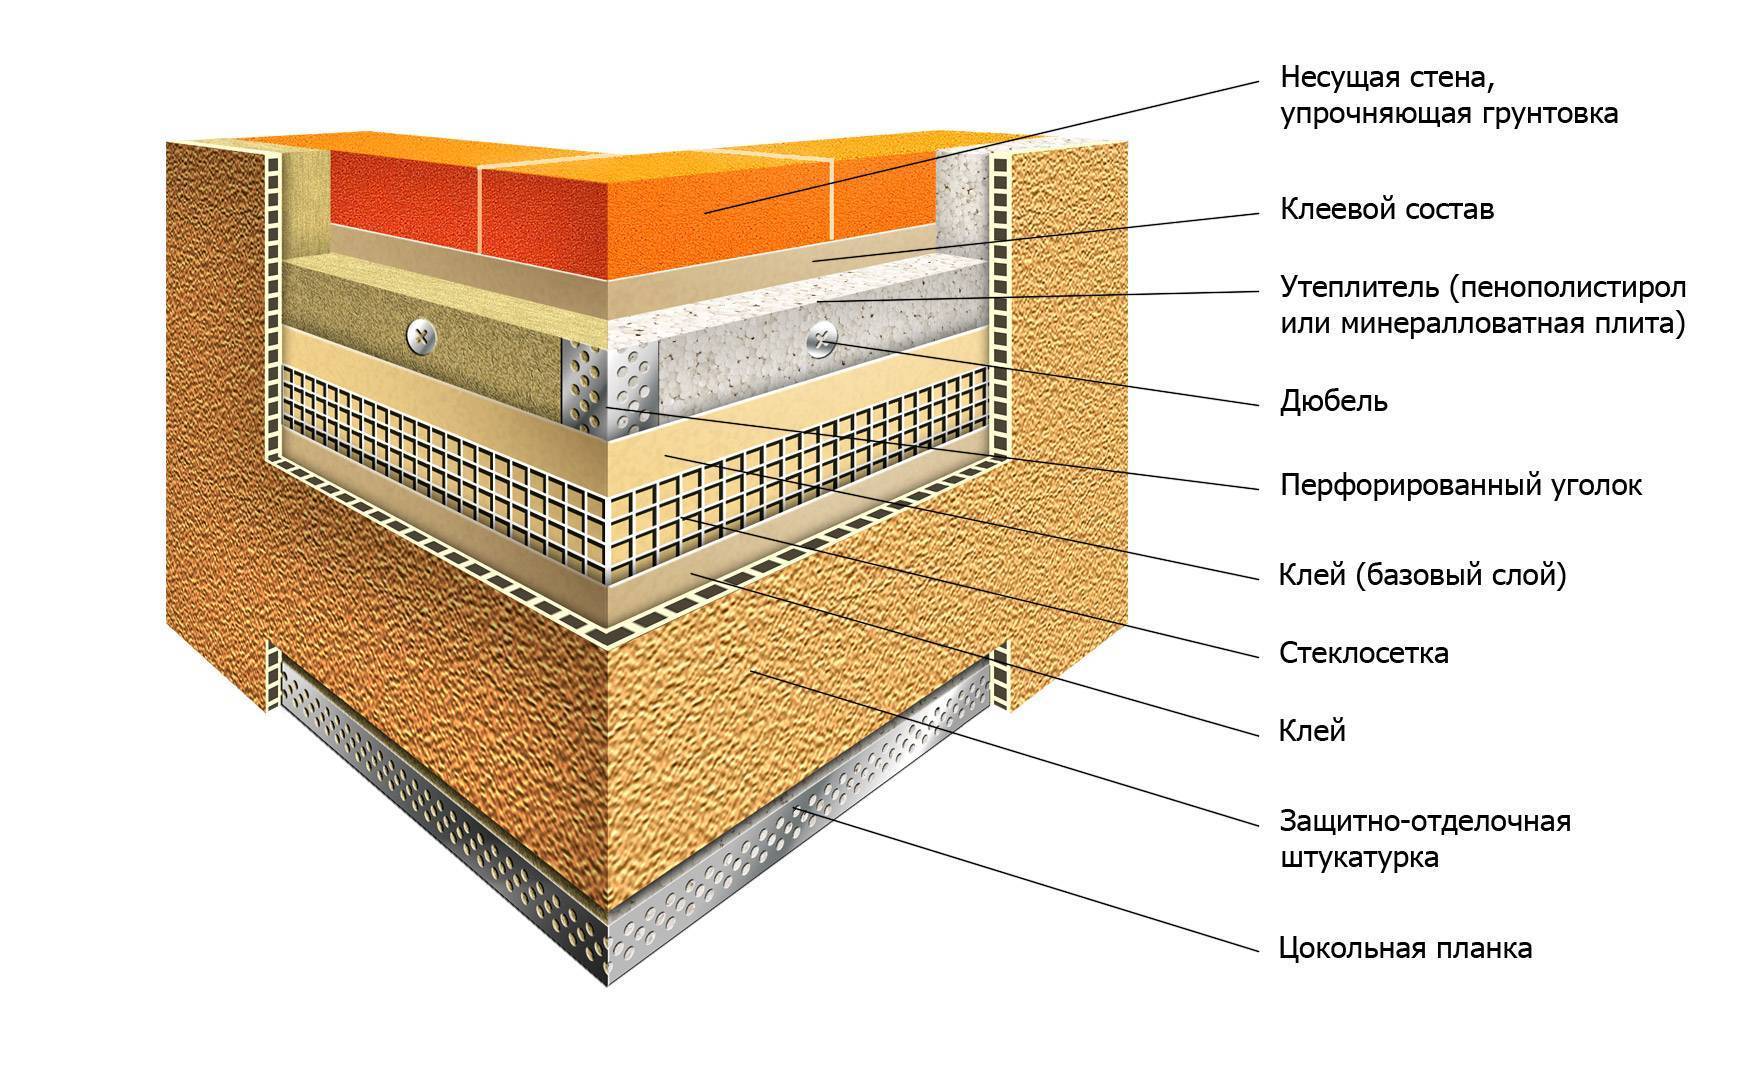 Утепление стен пенополистиролом: особенности и пошаговая инструкция